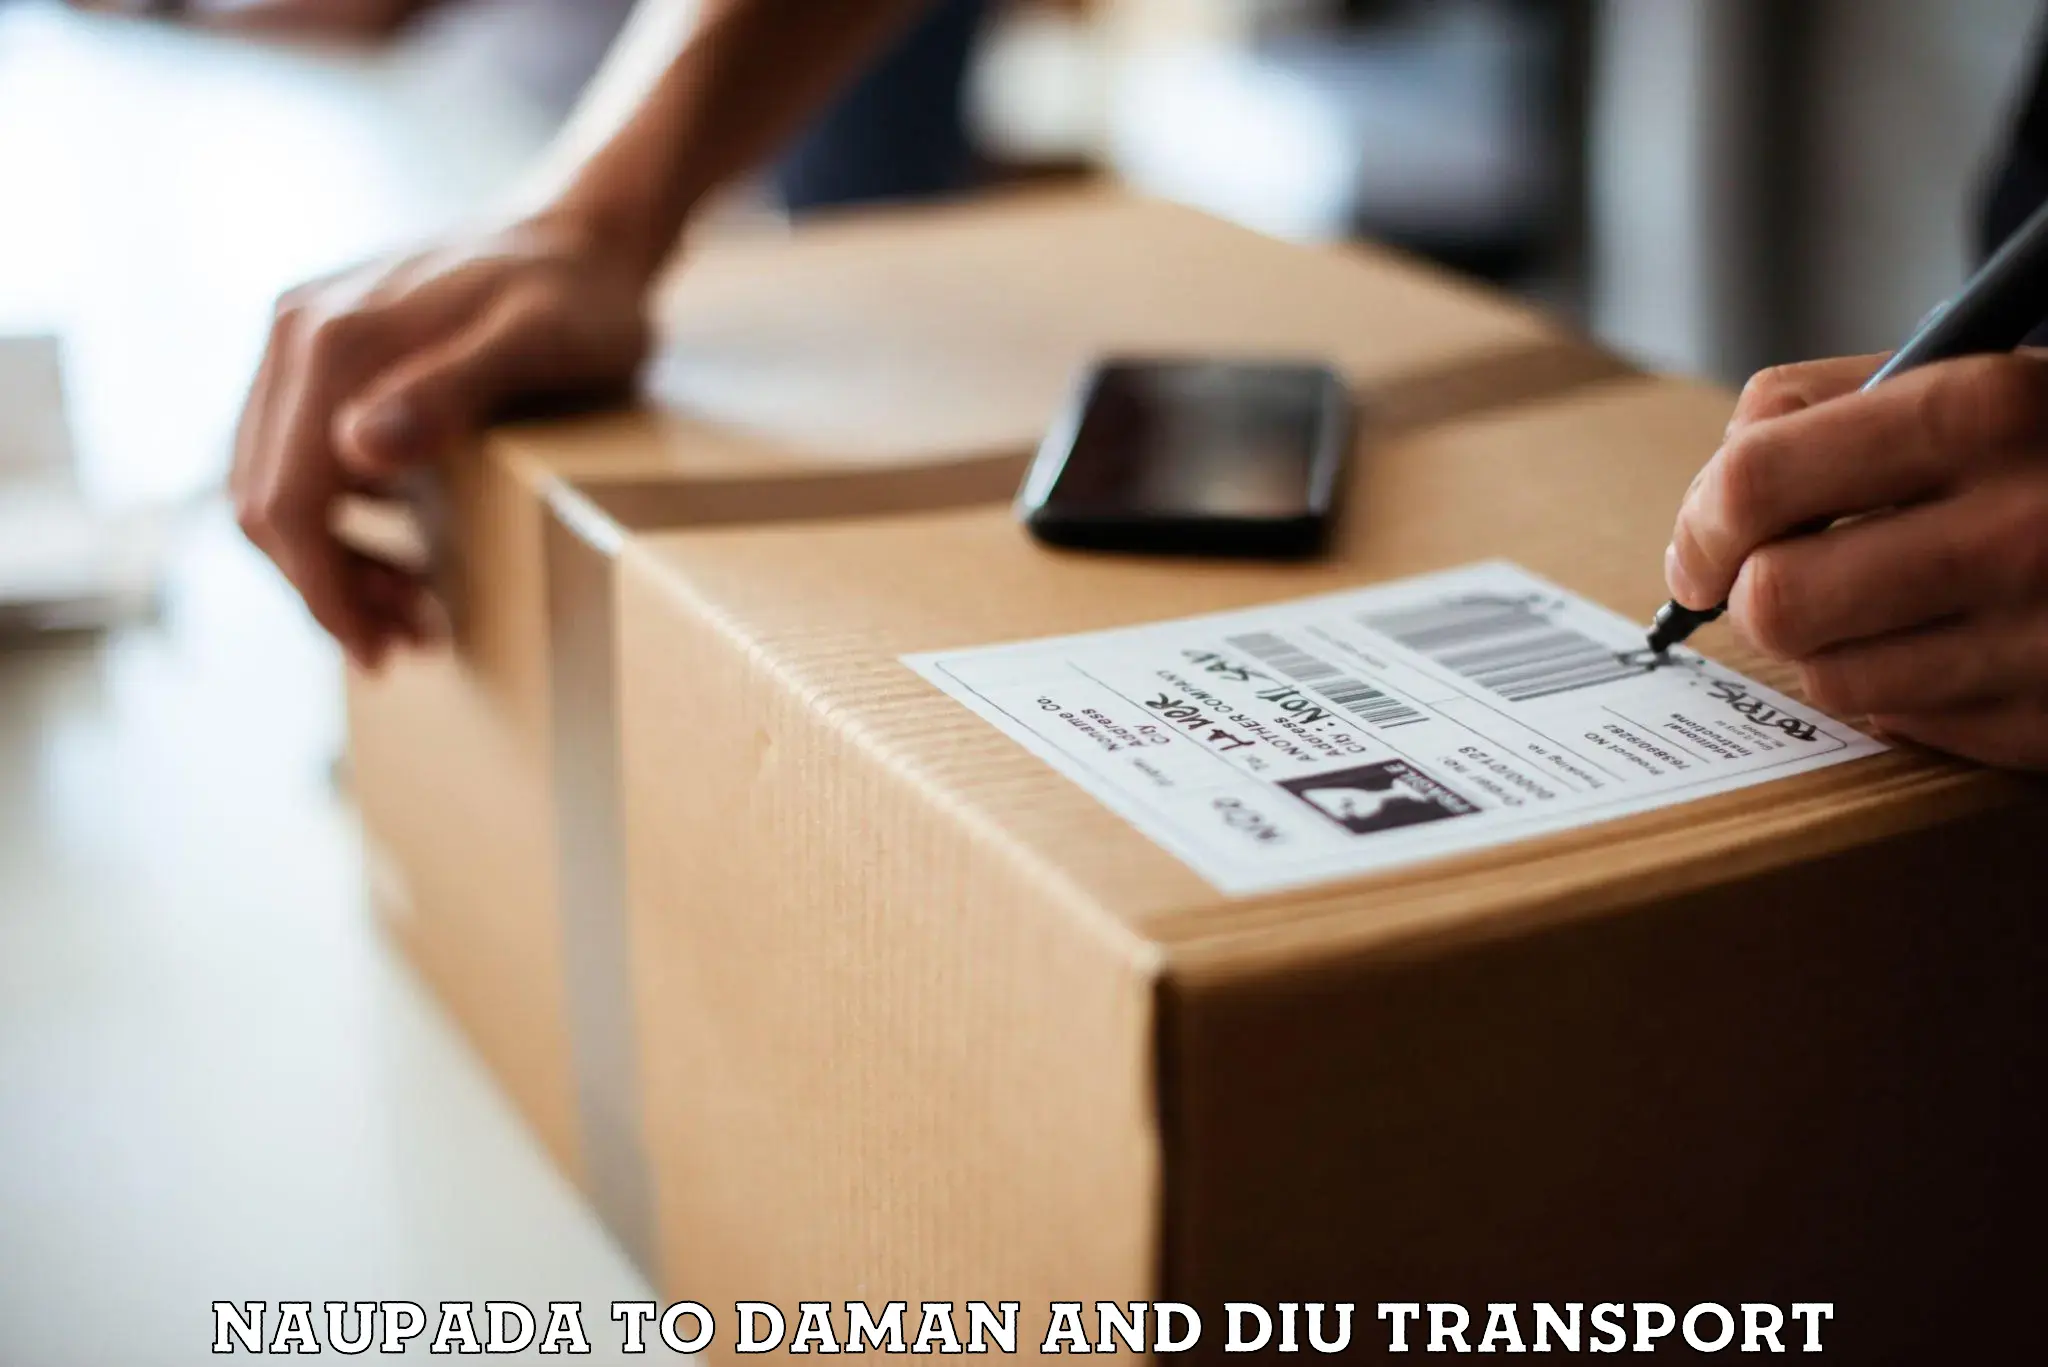 Transport shared services Naupada to Daman and Diu